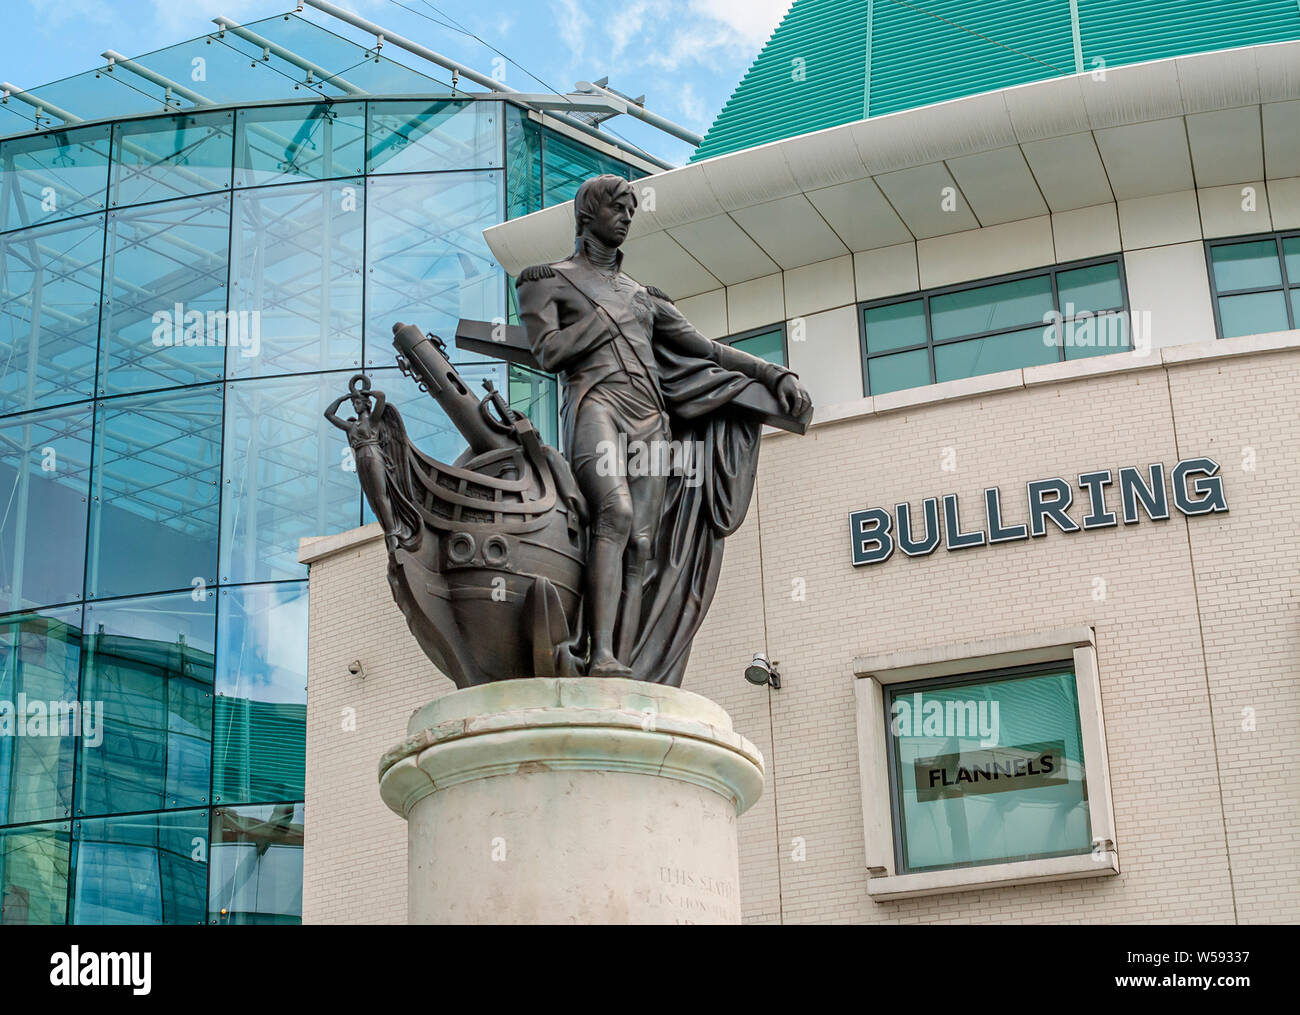 Statue de Lord Nelson à l'intérieur du centre commercial Bull Ring, un important quartier commercial de Birmingham, en Angleterre Banque D'Images